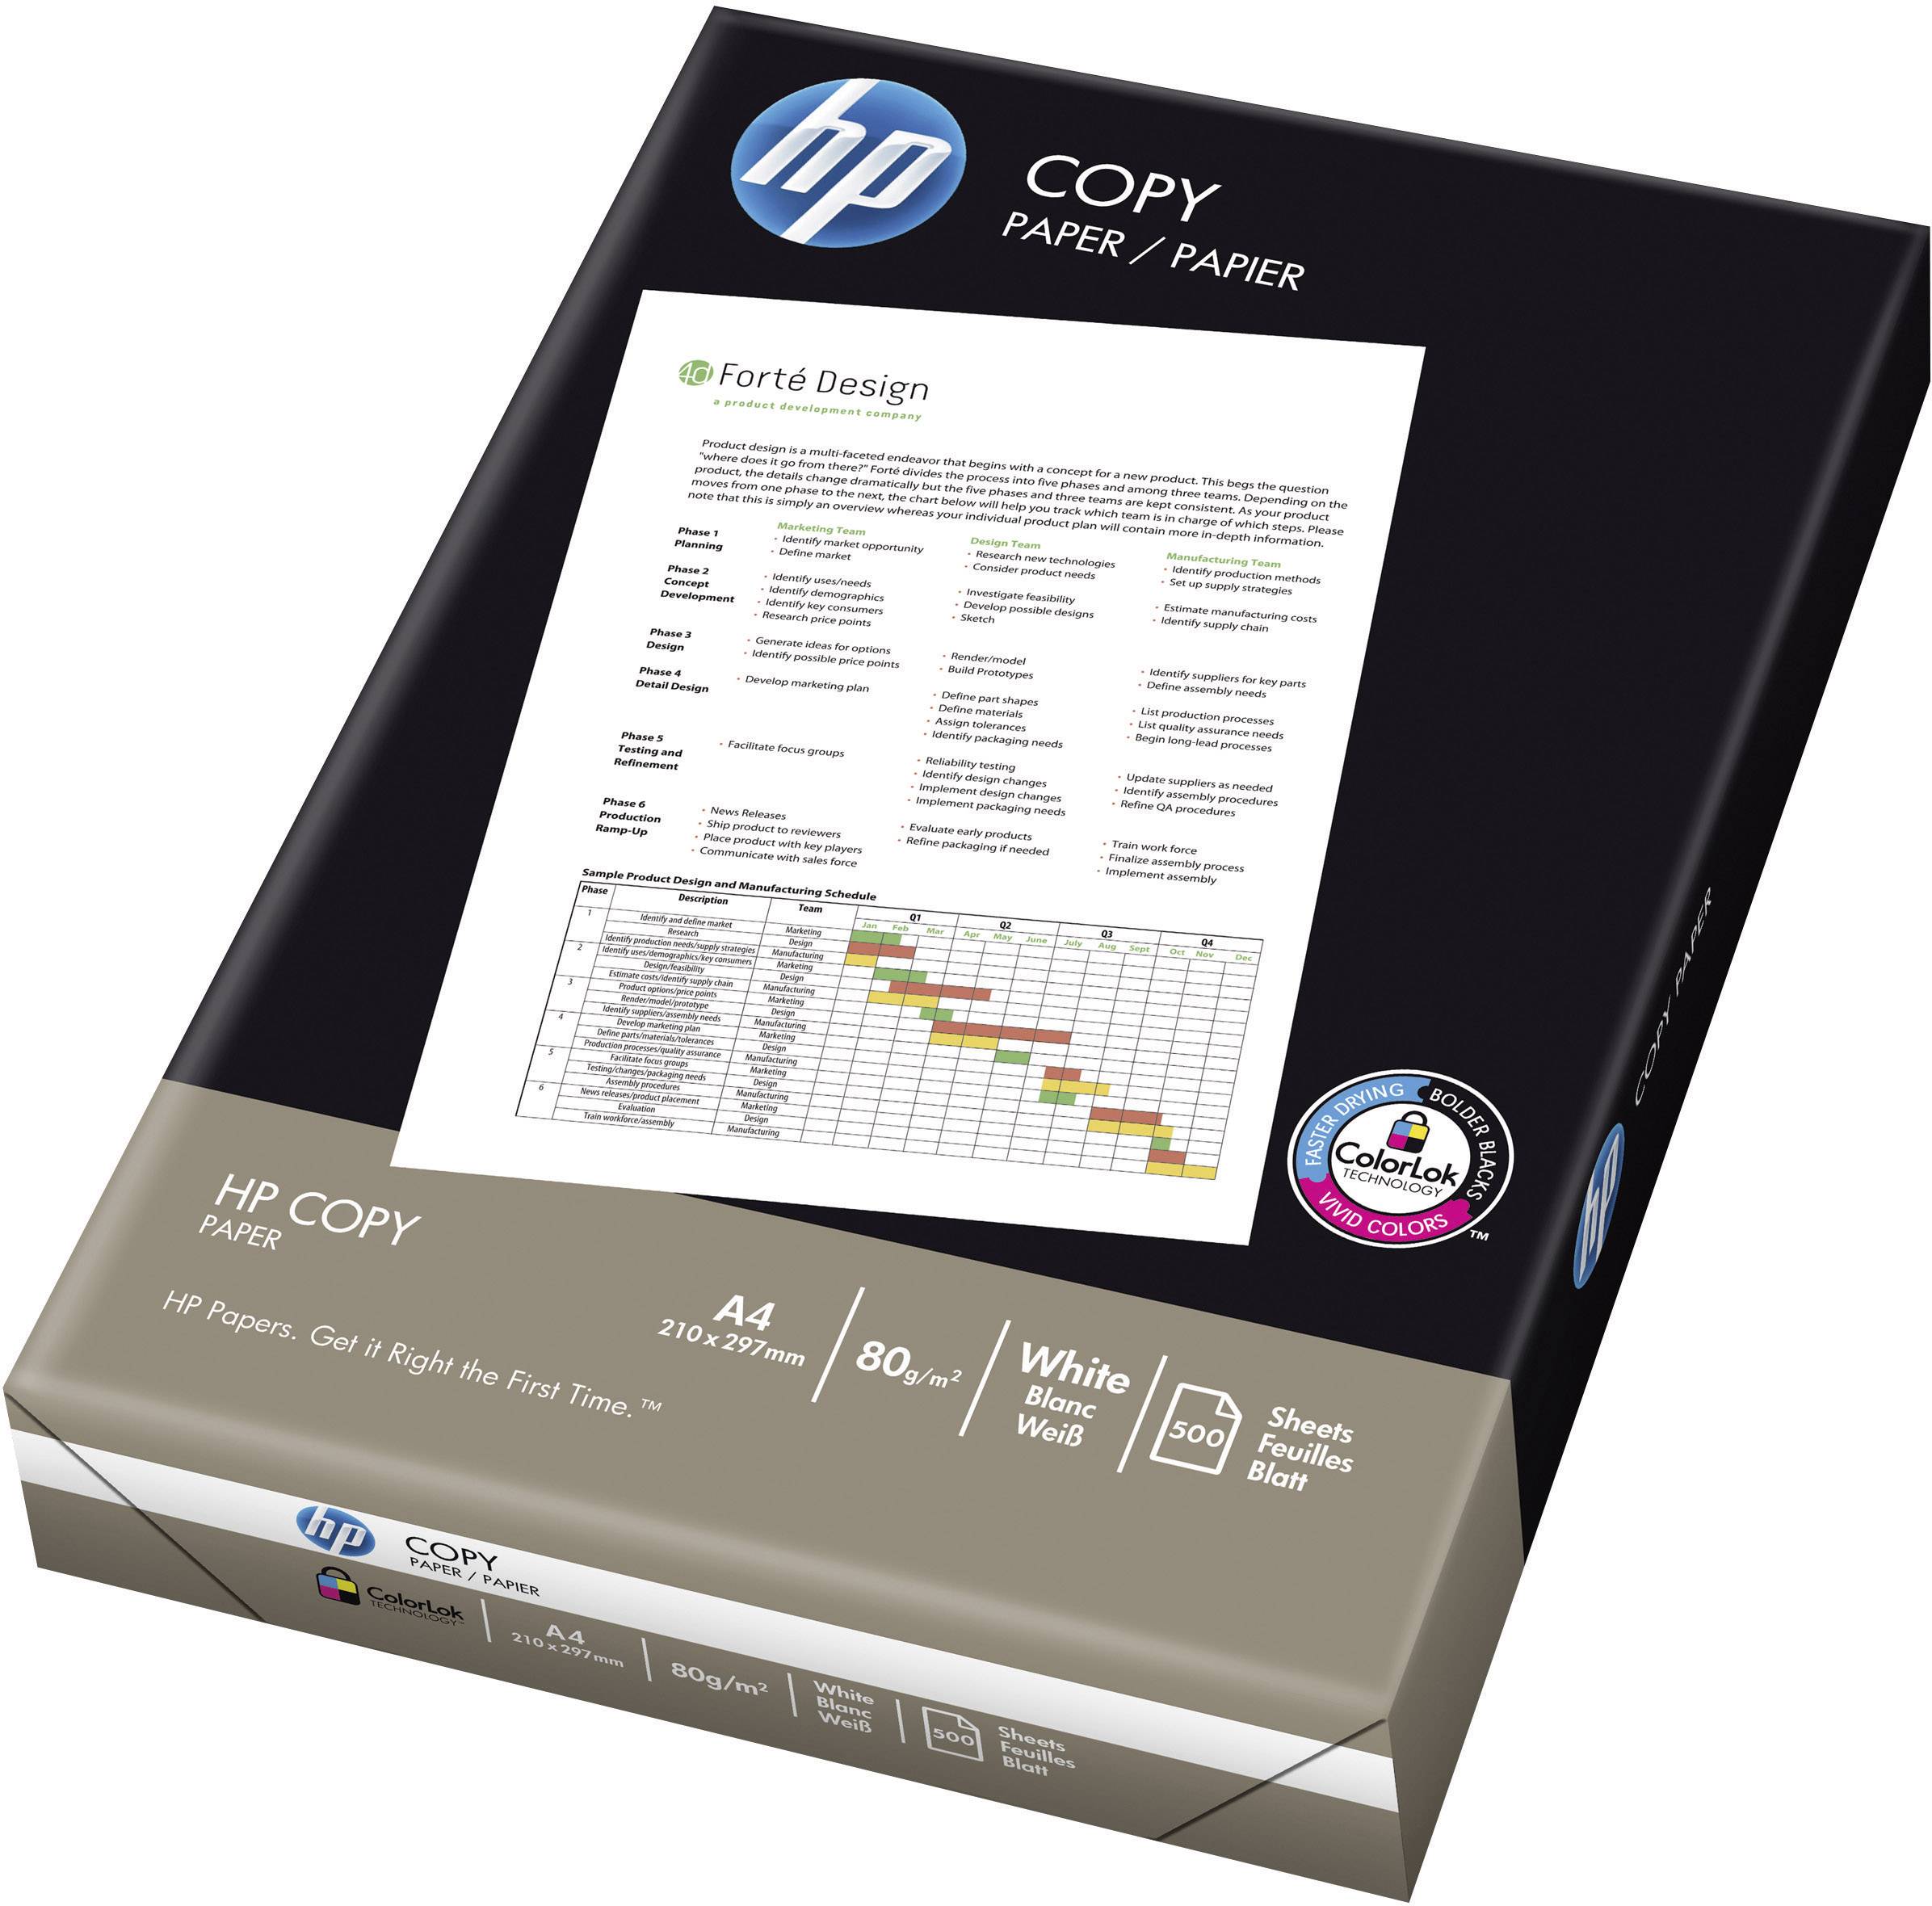 HP Copy Paper A4 210 x 297 mm 80 g/m² 500 Stck. Papier für Envy 5055 7645 LaserJet Pro M102 MFP M26